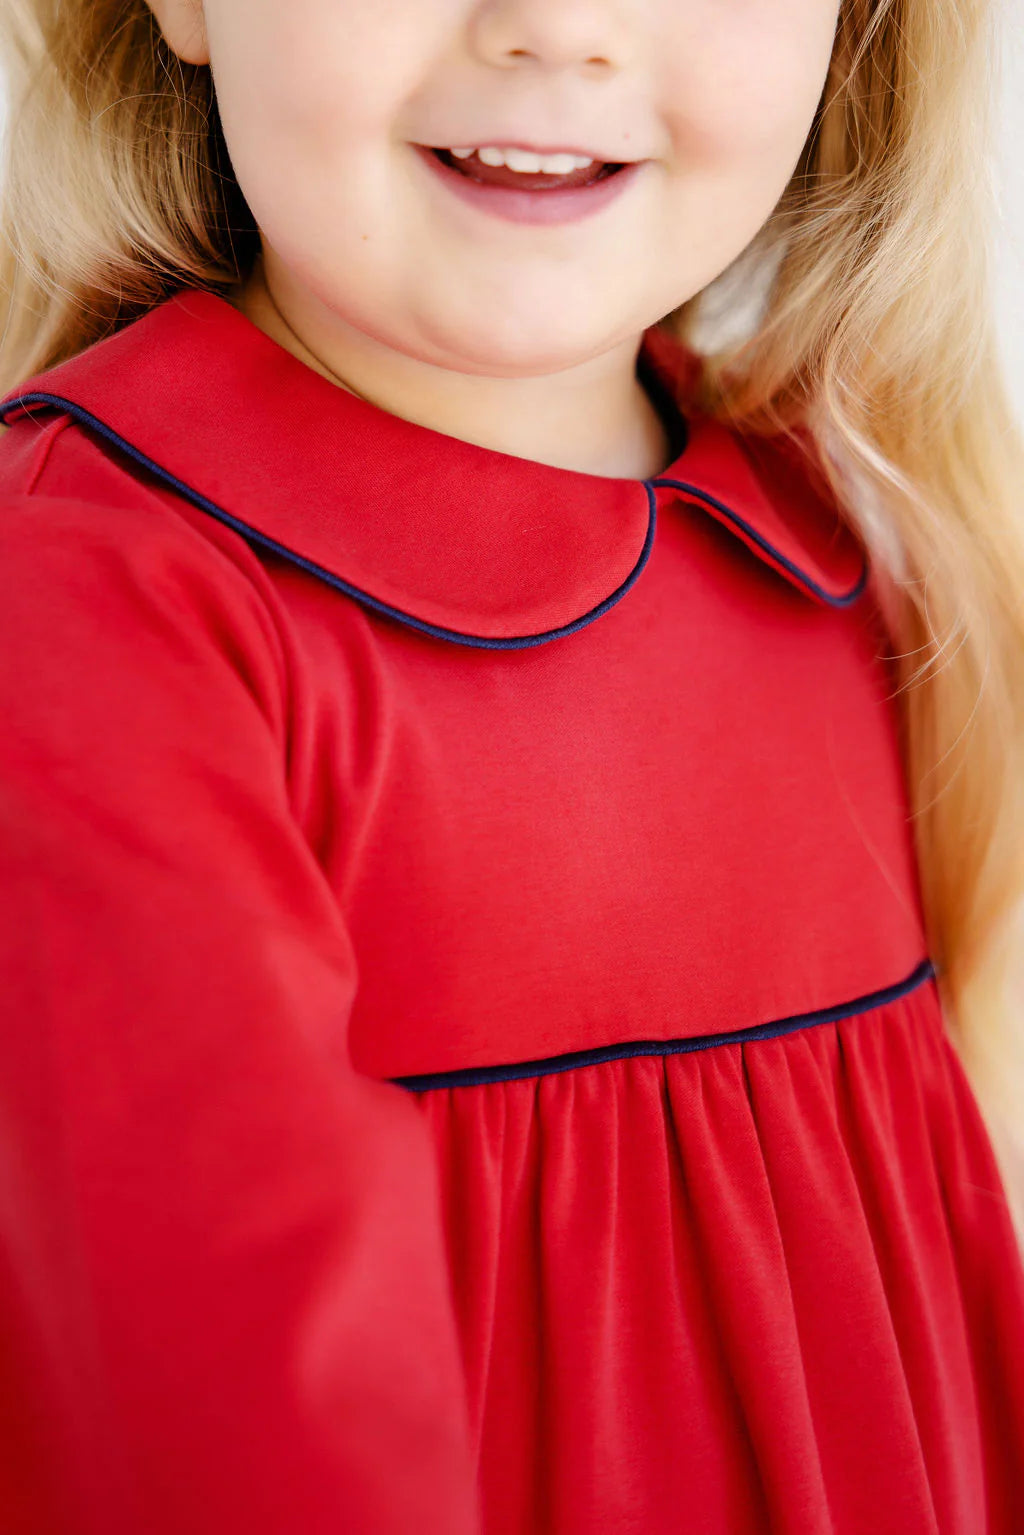 Maude's A-Line Top - Richmond Red Girl Shirt Beaufort Bonnet 